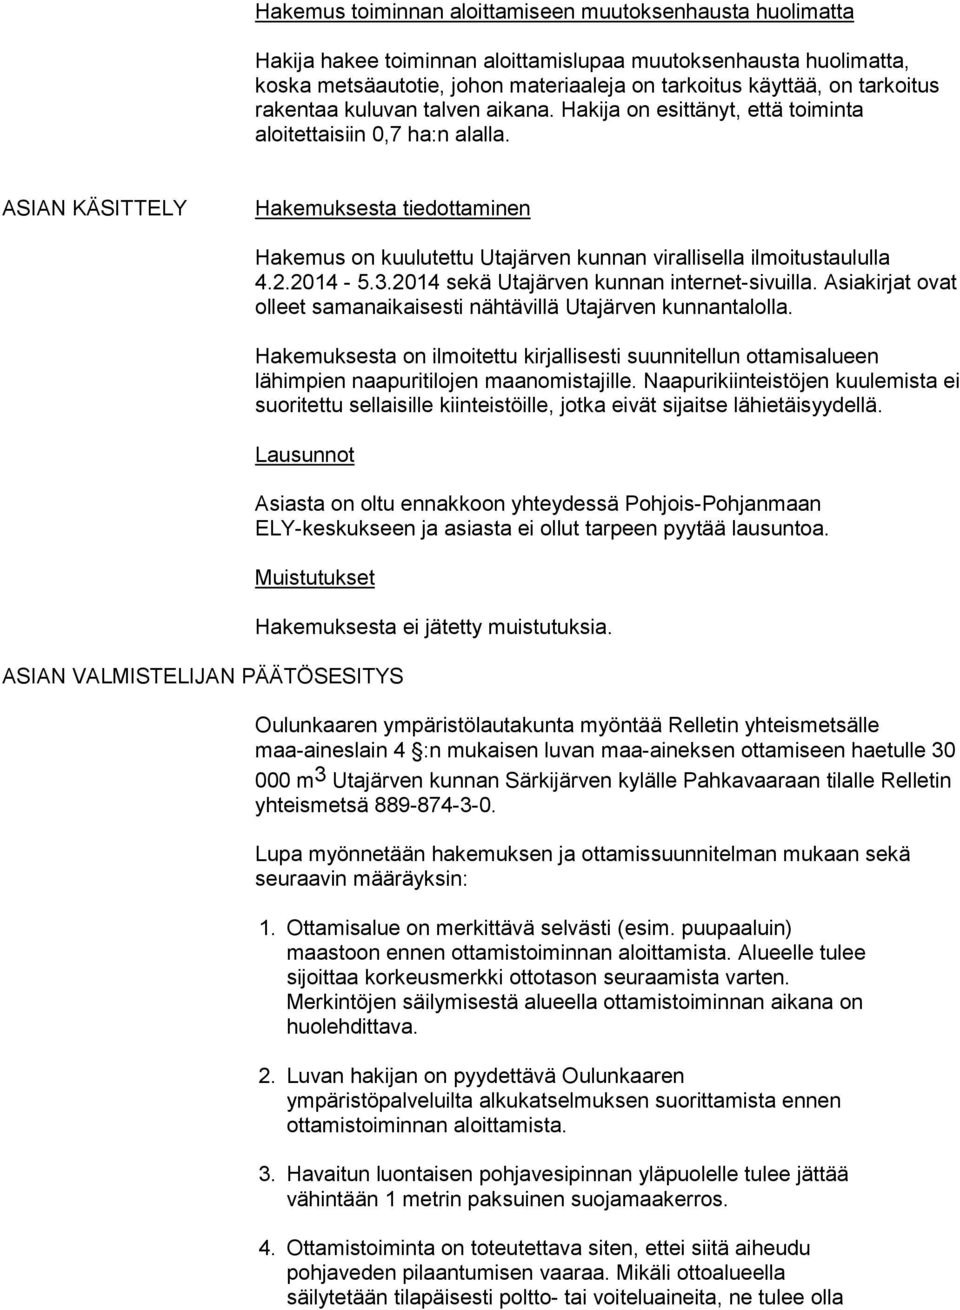 ASIAN KÄSITTELY Hakemuksesta tiedottaminen Hakemus on kuulutettu Utajärven kunnan virallisella ilmoitustaululla 4.2.2014-5.3.2014 sekä Utajärven kunnan internet-sivuilla.